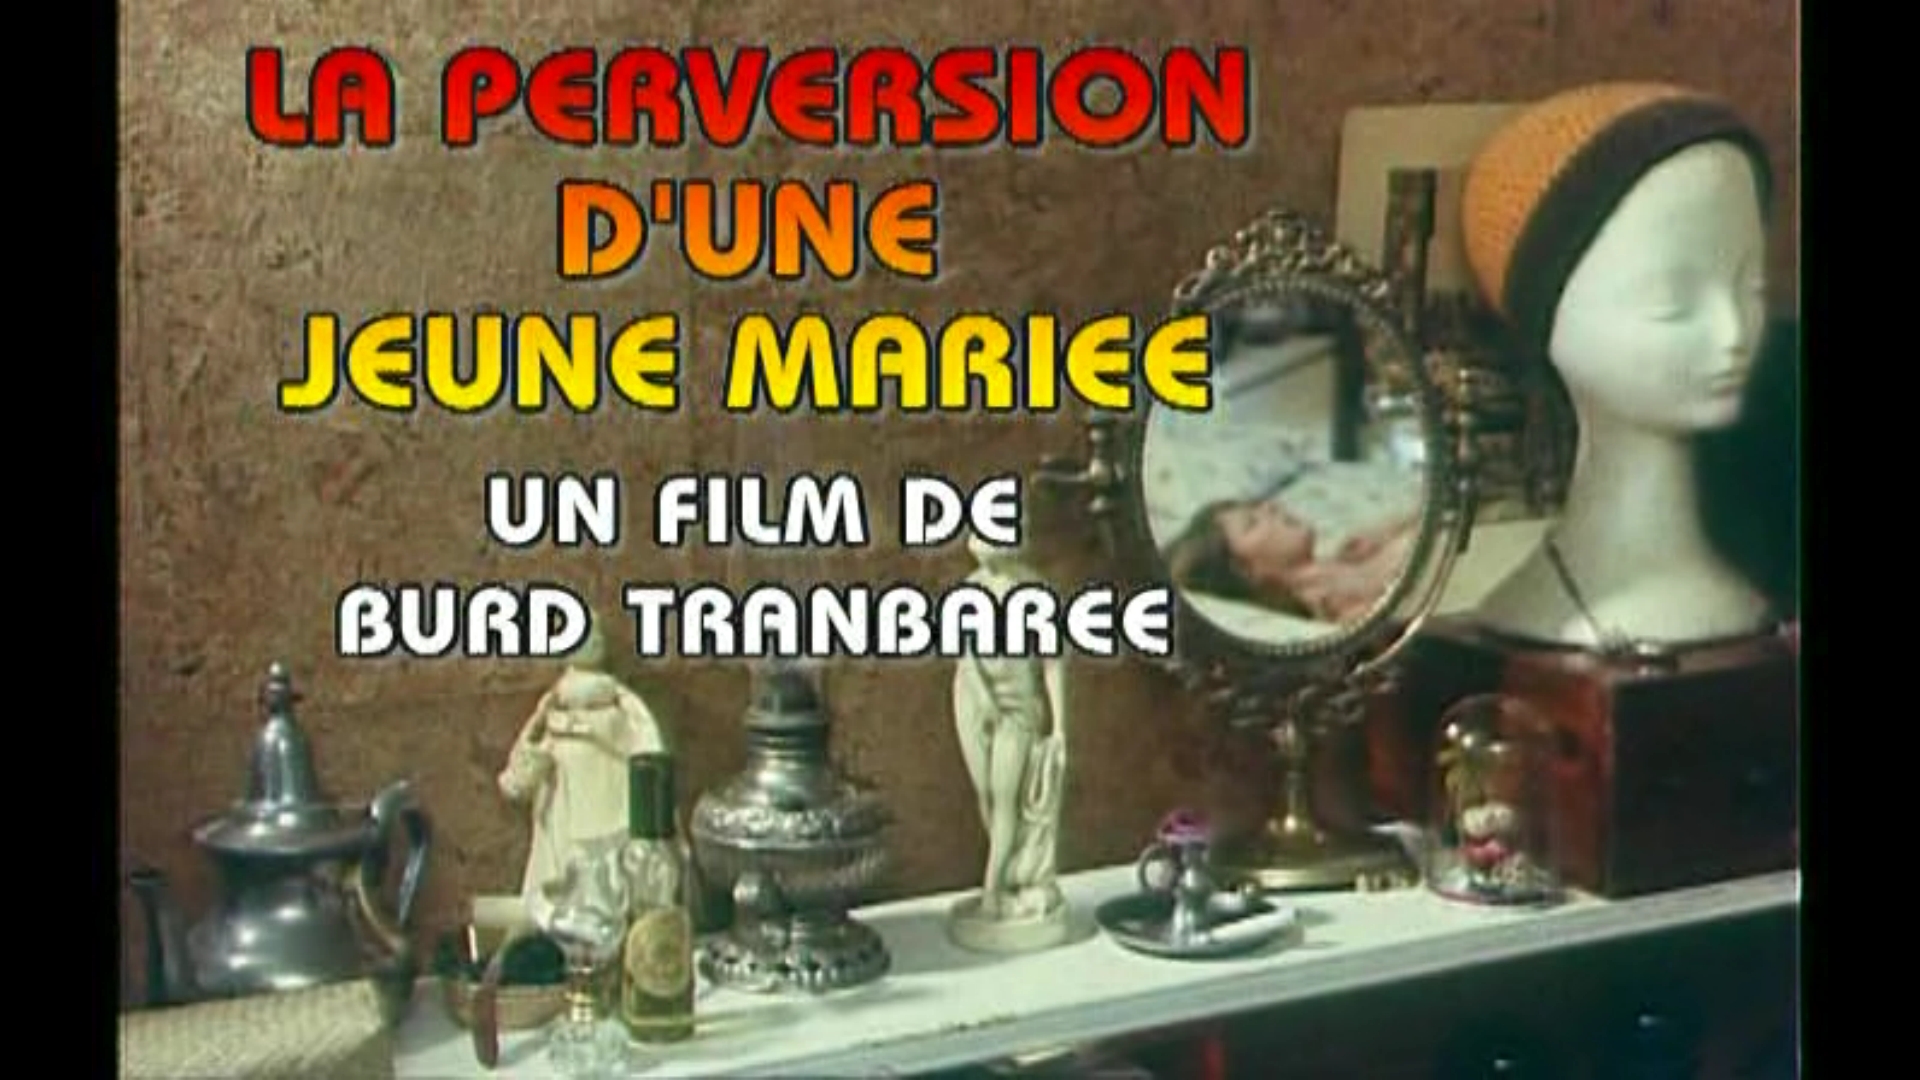 La Perversion d'une jeune mariée 1977 movie nude scenes